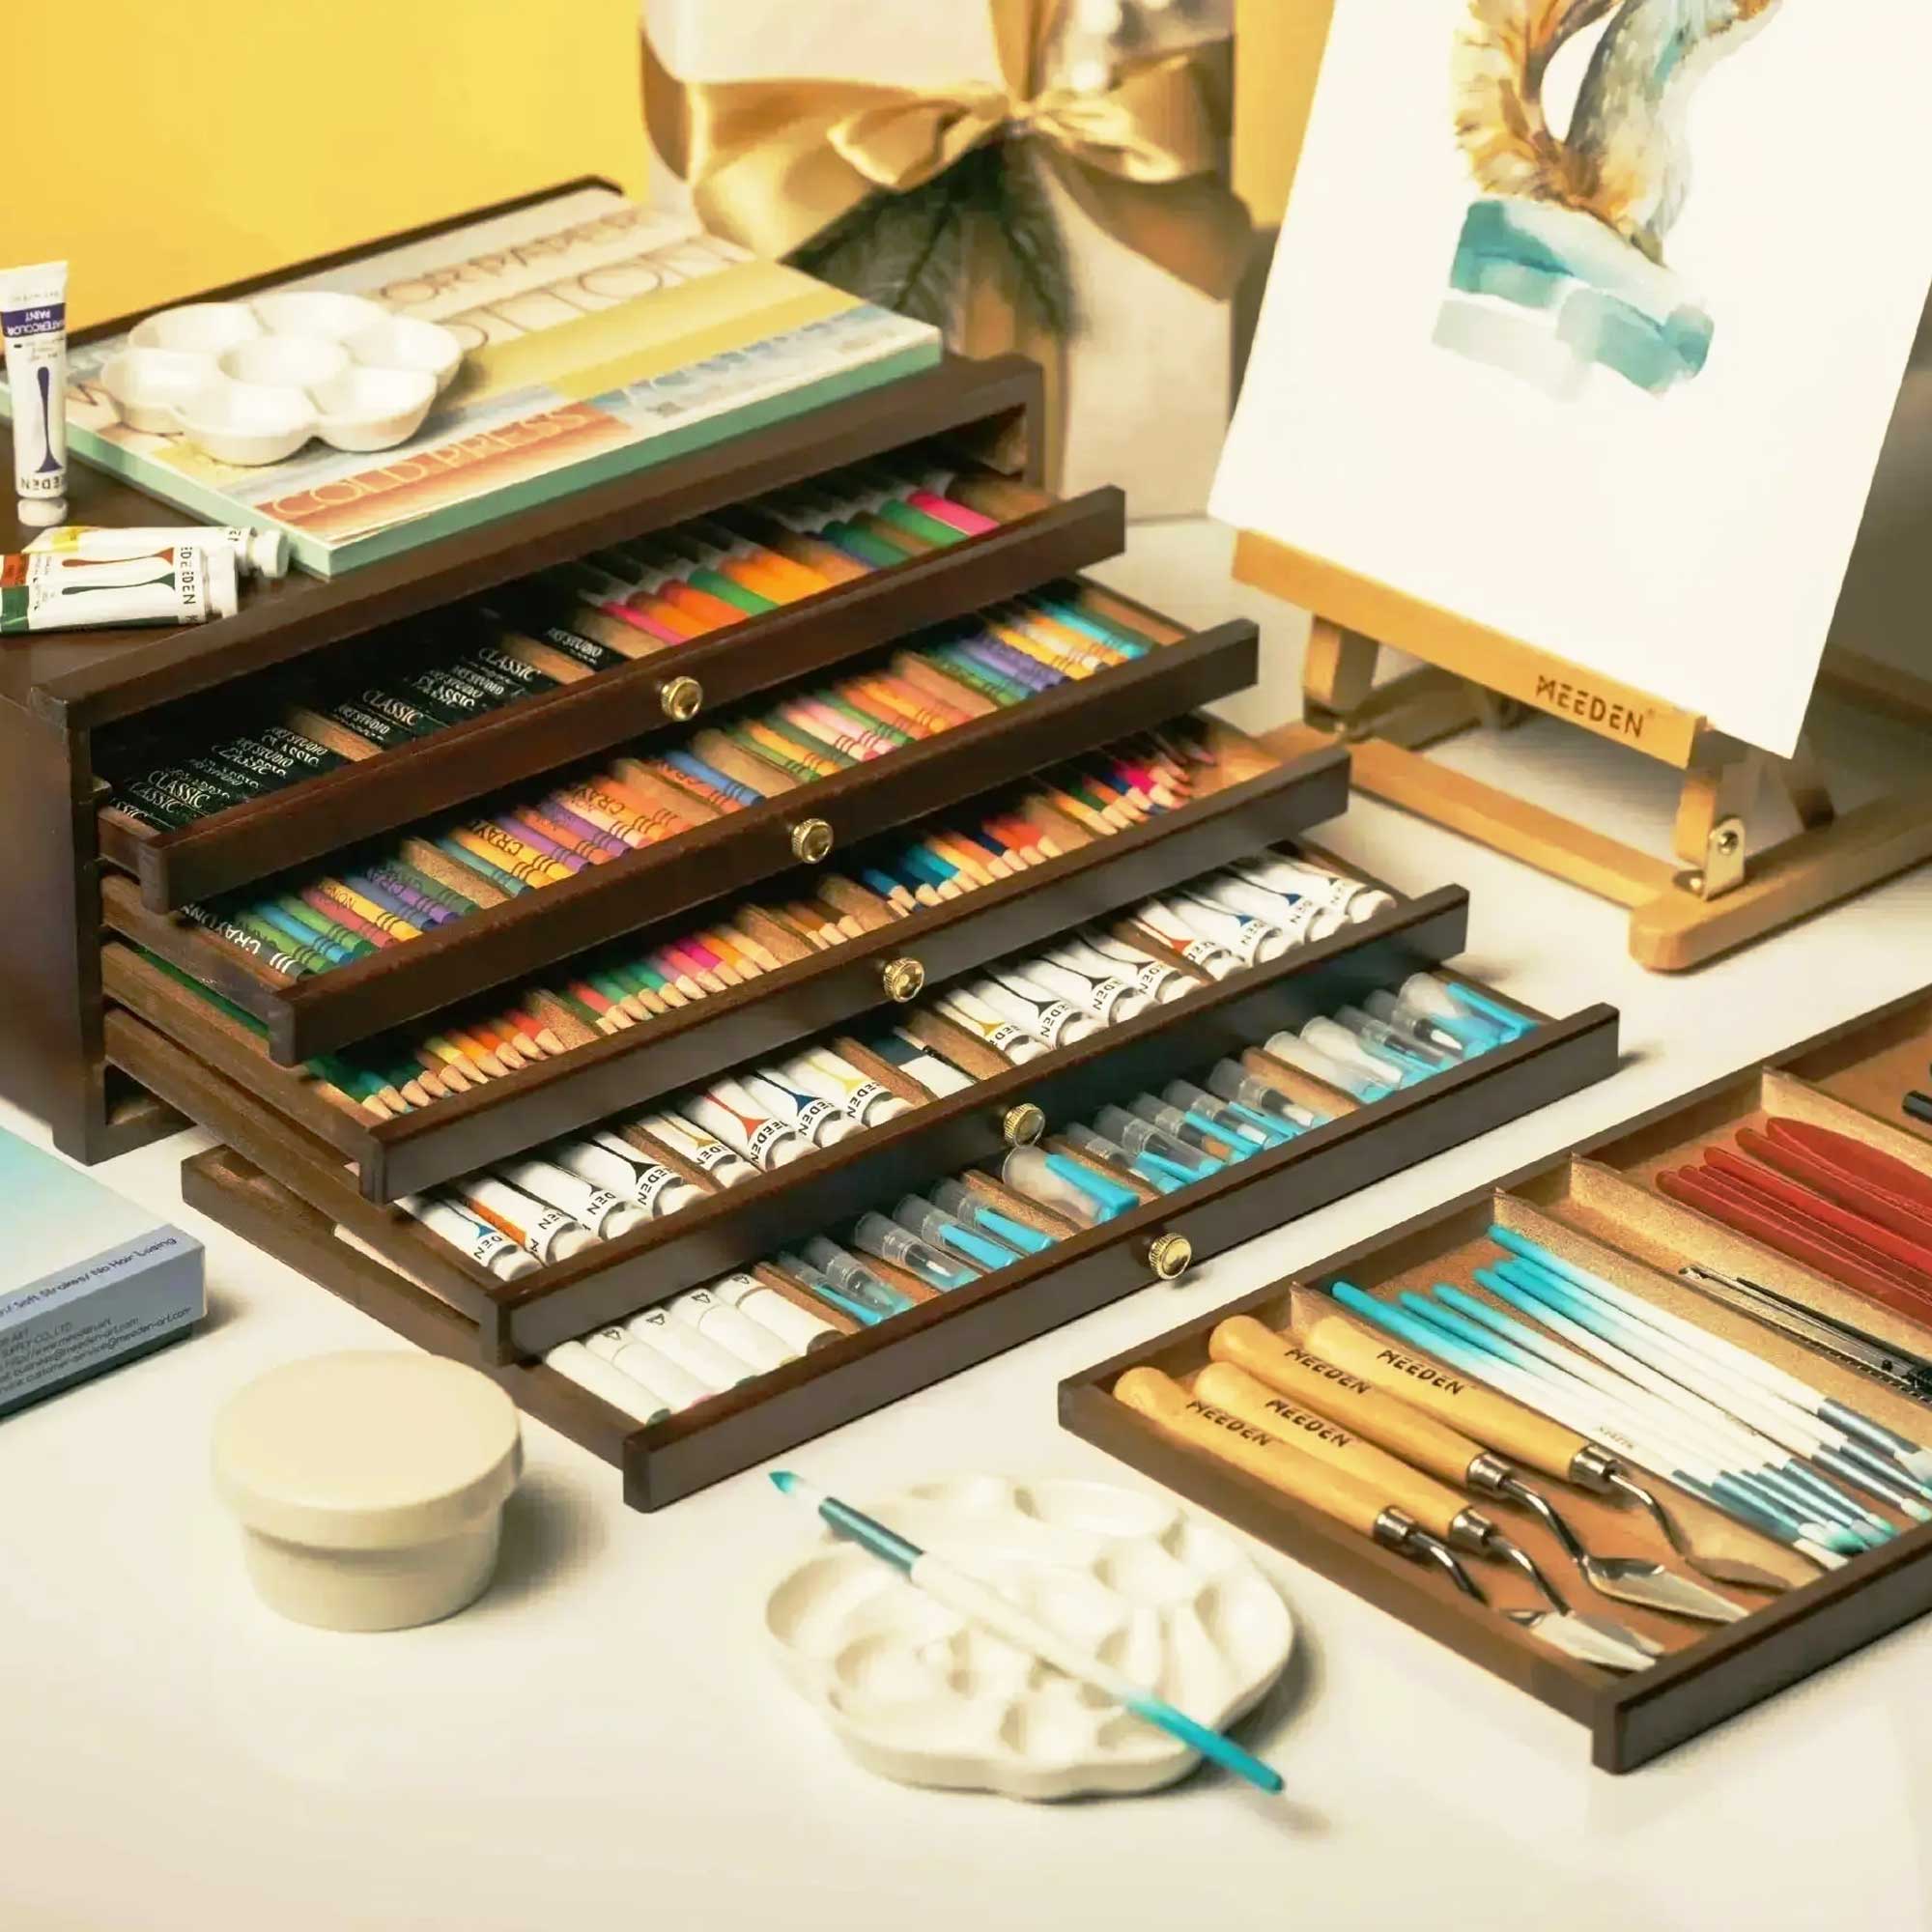 MEEDEN Artists Supplies Storage Box 6 Drawer - Walnut Finish